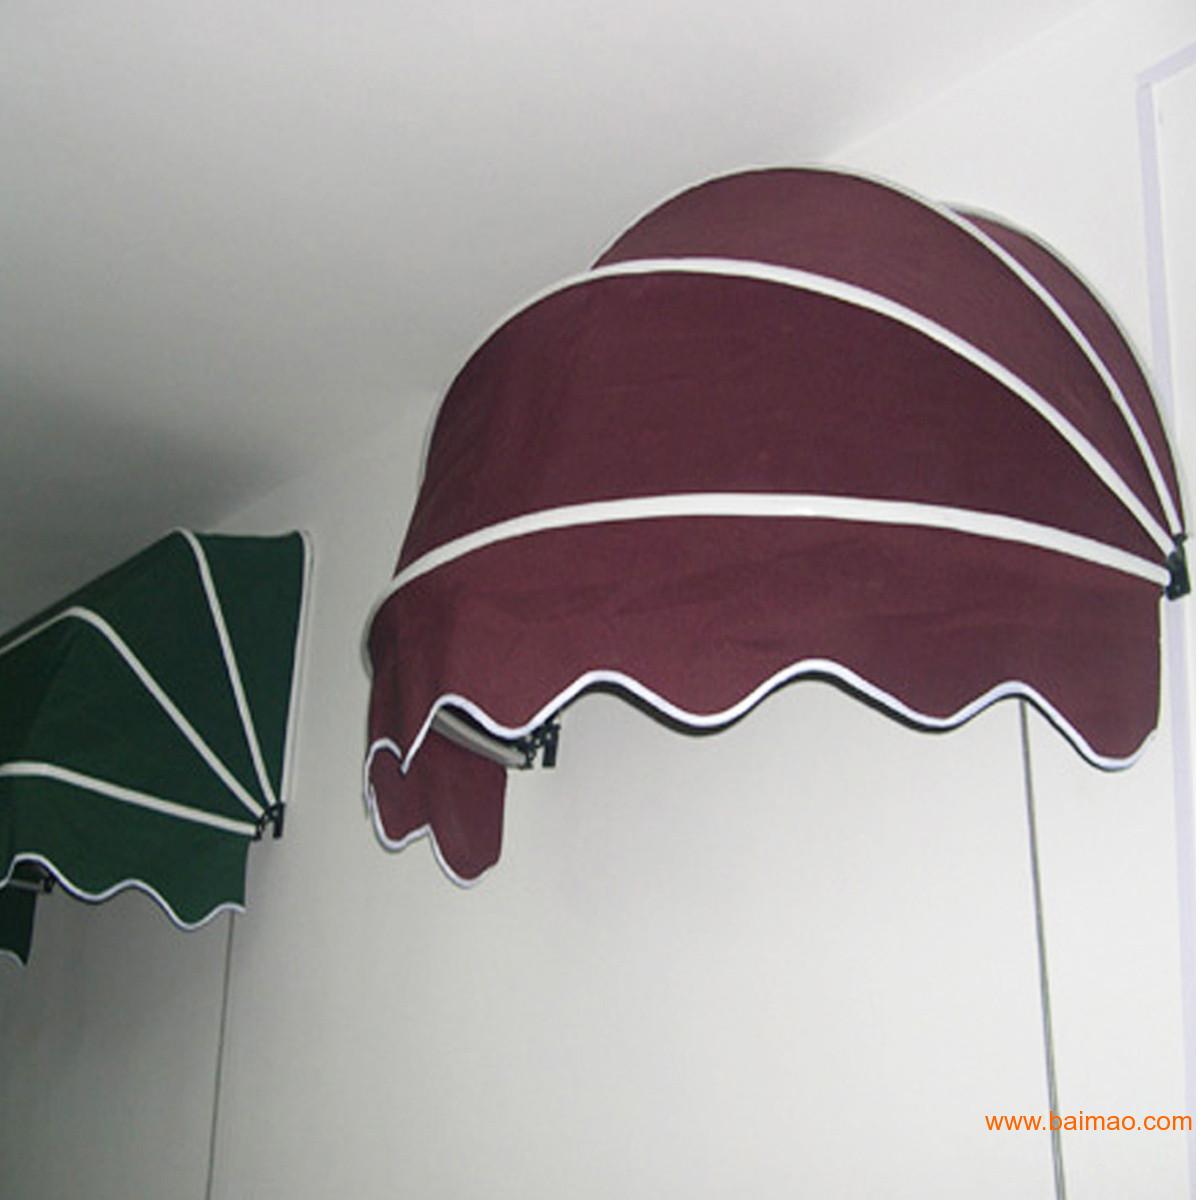 法式遮阳棚 西瓜棚 欧式遮阳棚 折叠式遮阳棚 雨篷